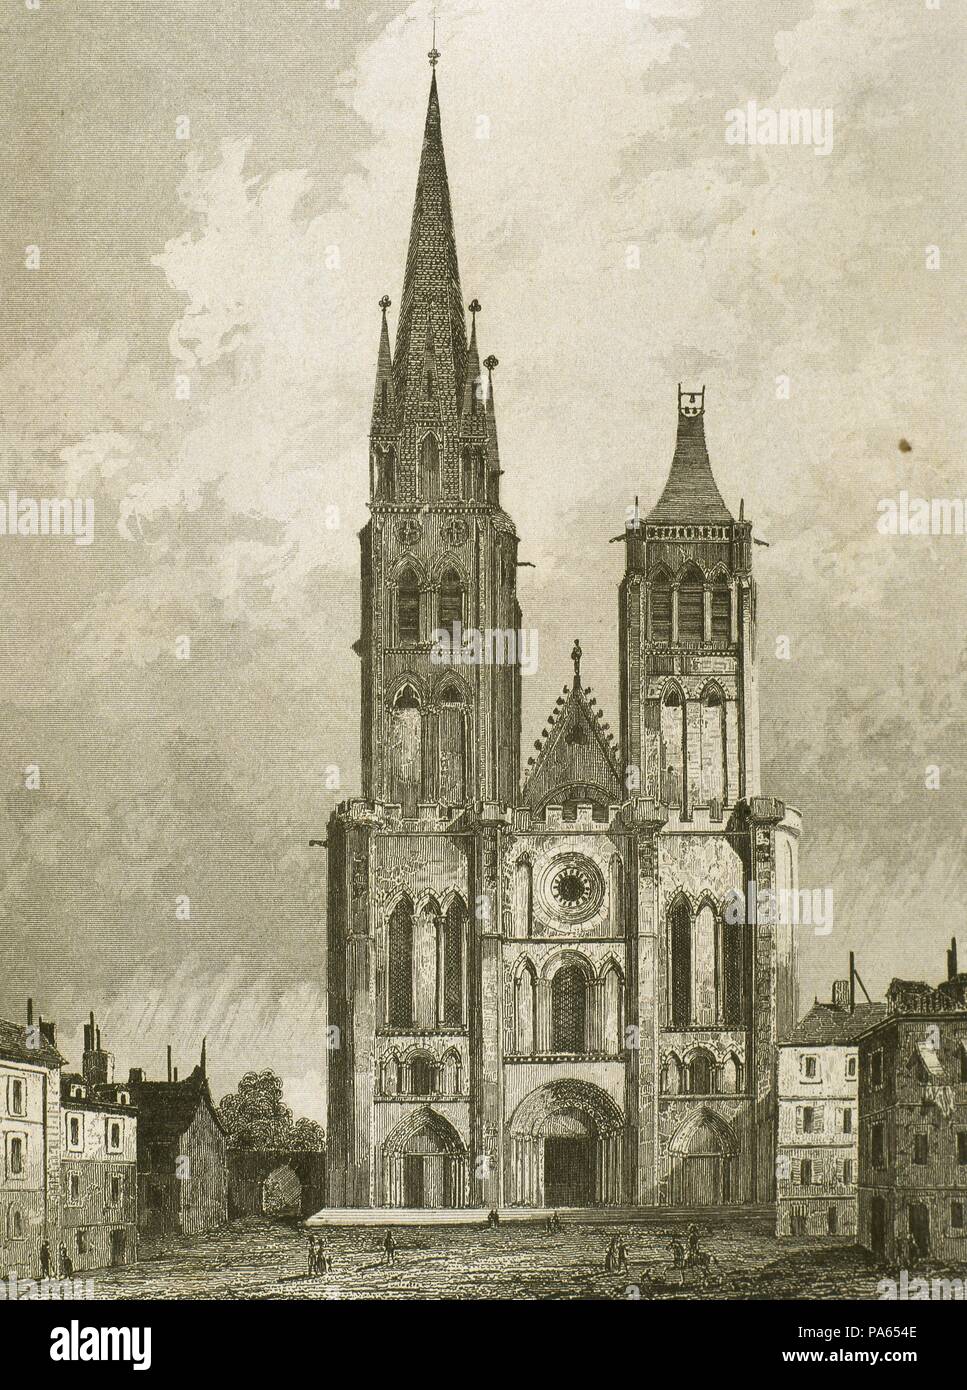 Catedral de Saint Denis, en las cercanías de París, Francia. Su construcción comenzó A mediados del siglo XII. Dibujo por Gaucherel. Grabado, 1841. "Panorama Universal-Francia'. Foto Stock